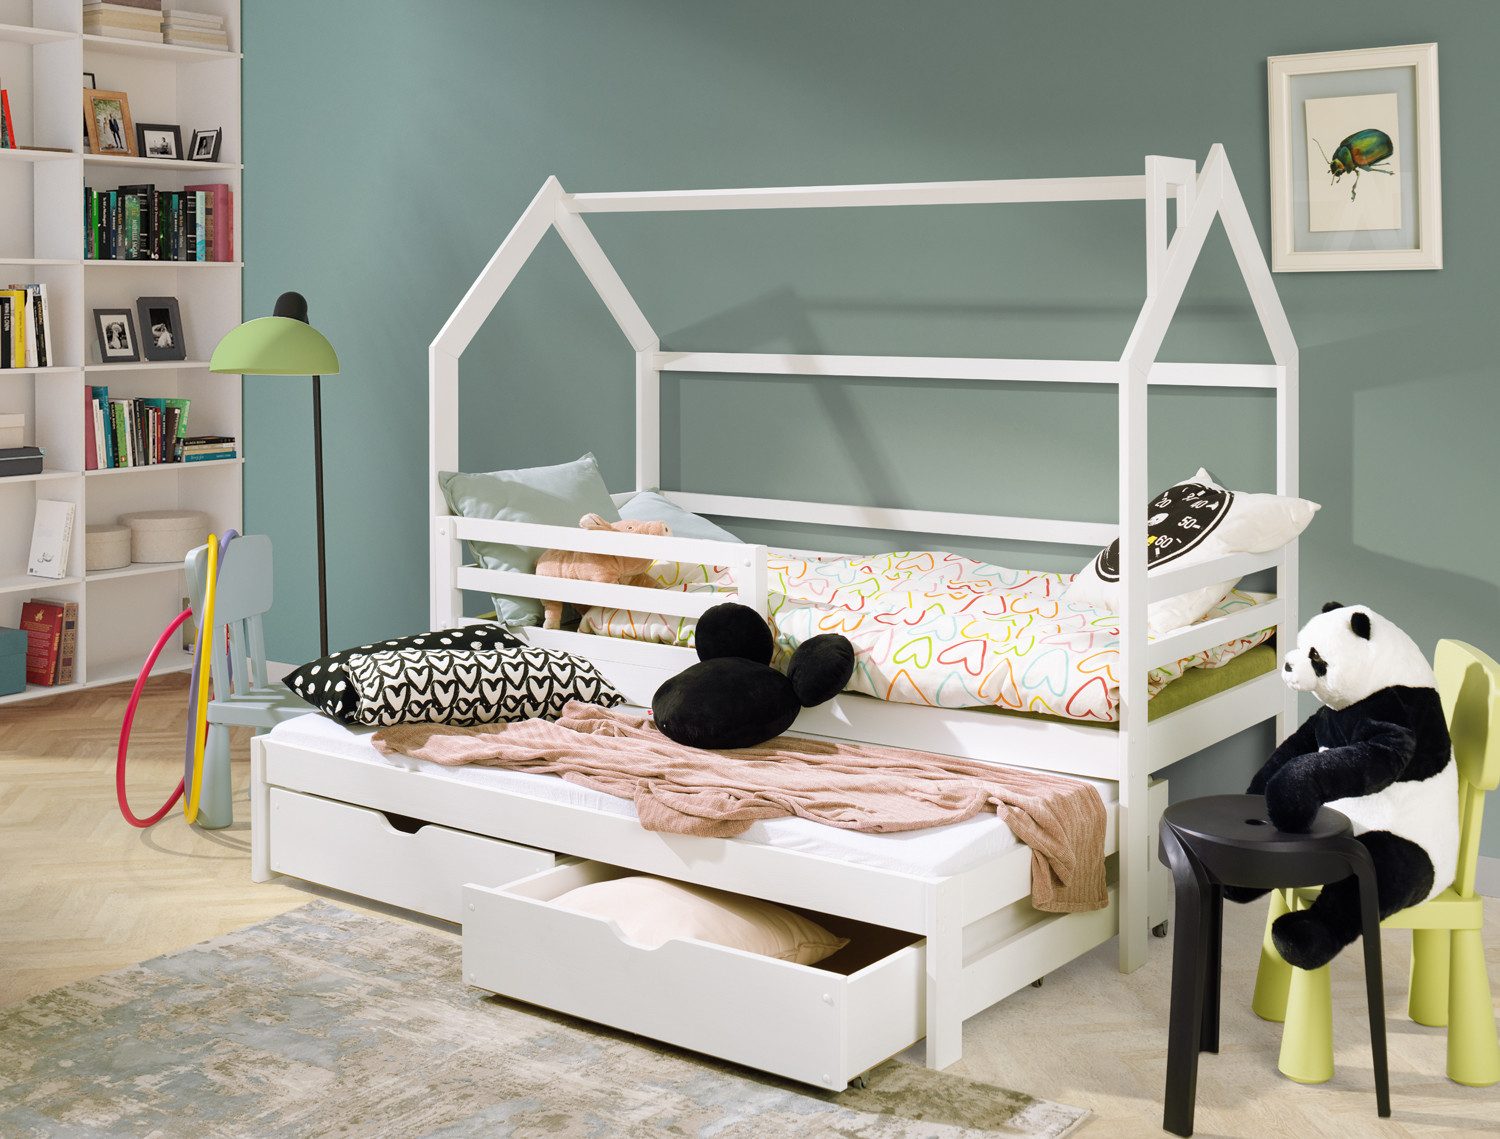 thematys Hausbett mit Ausziehbett und zwei Schubladen in weiß (80x180cm, mit Rausfallschutz für Jungen und Mädchen, Kinderzimmer-Bett), aus massiv Kieferholz